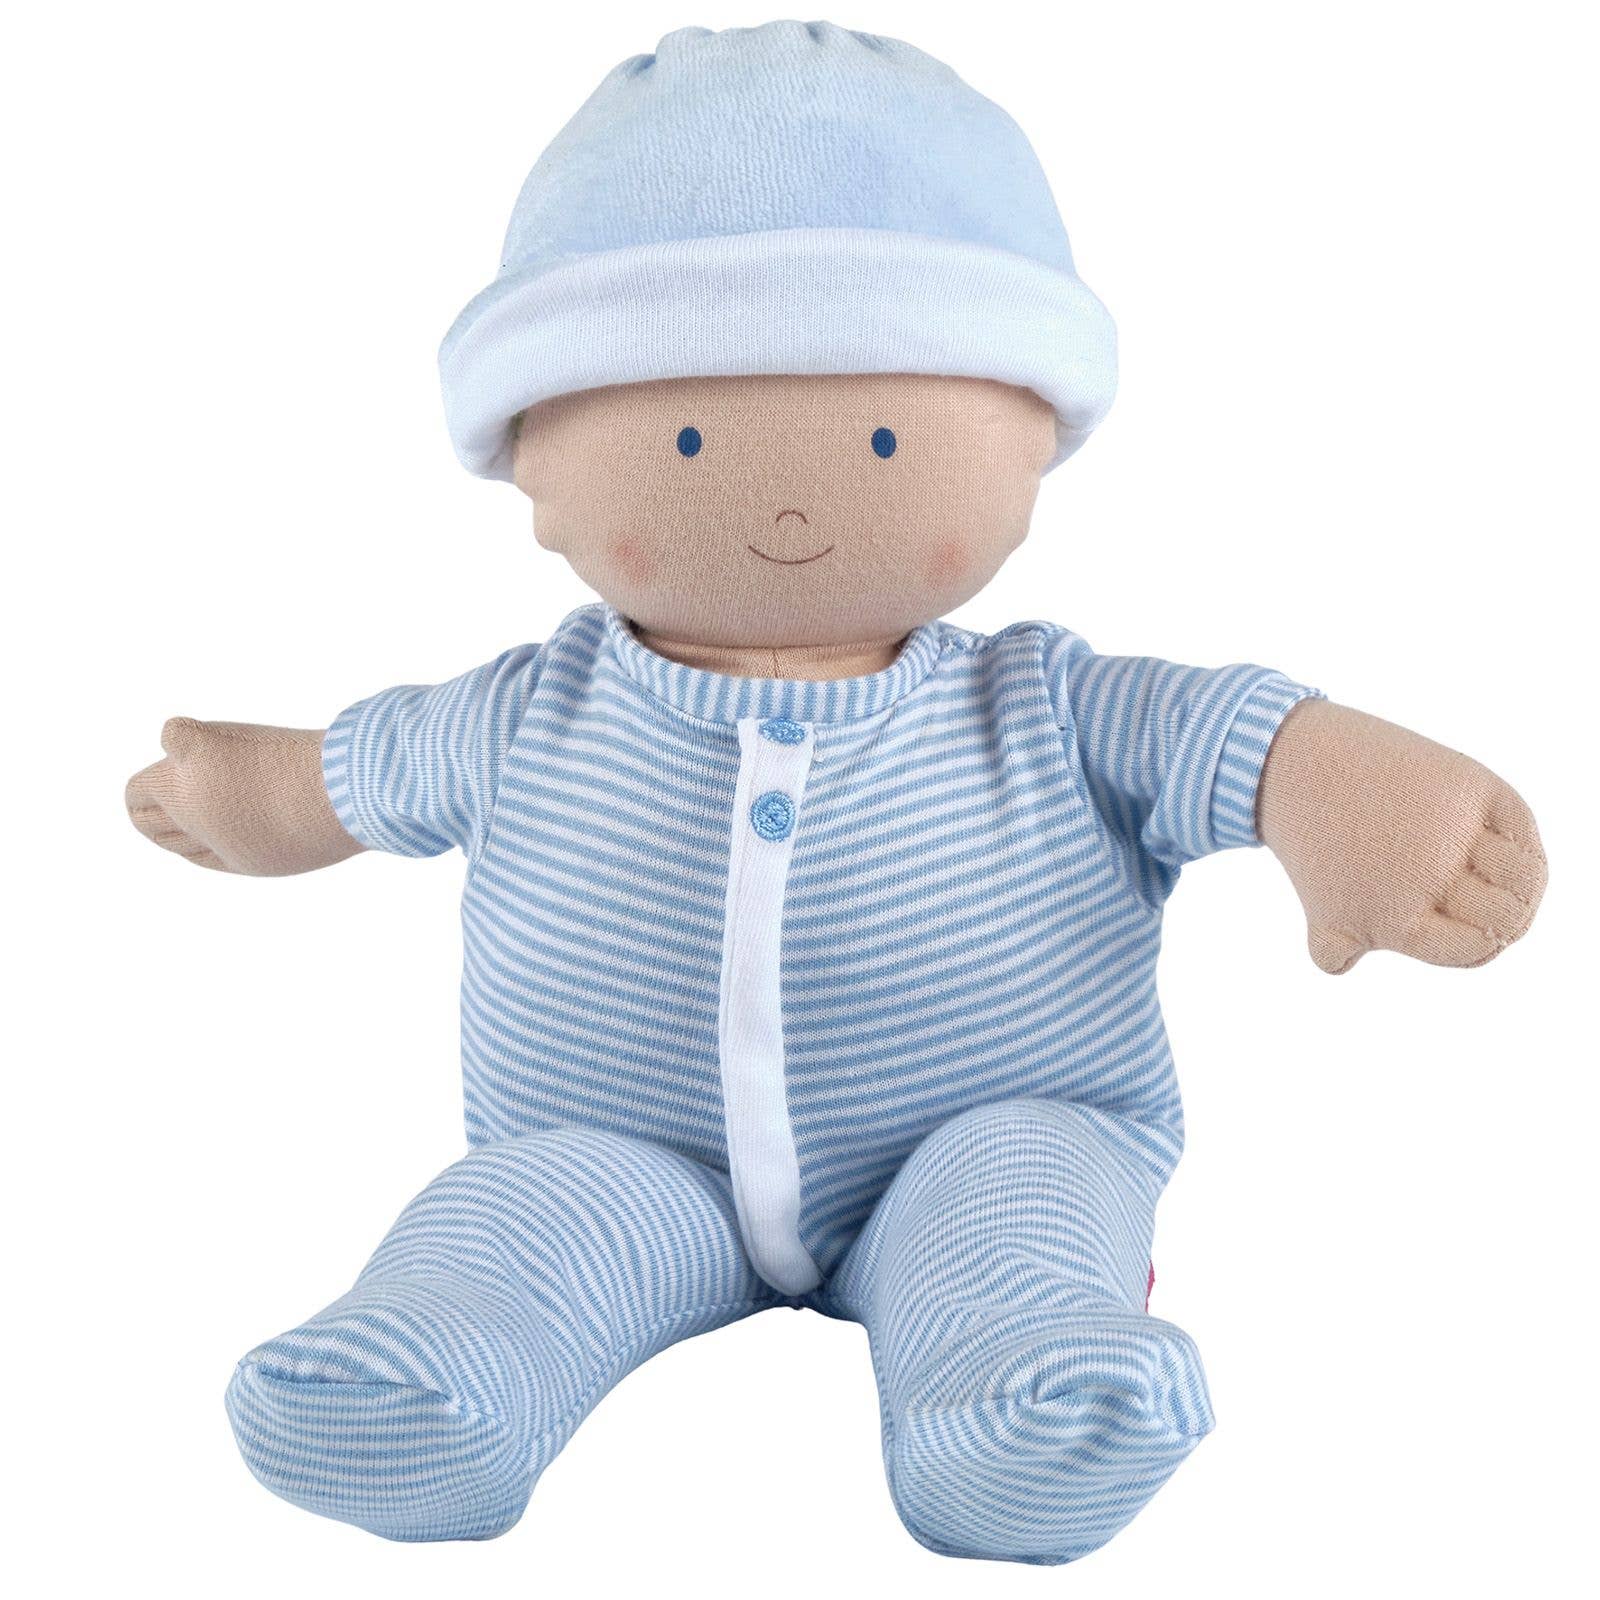 Cherub Baby Boy Doll in Blue Outfit - Einstein's Attic